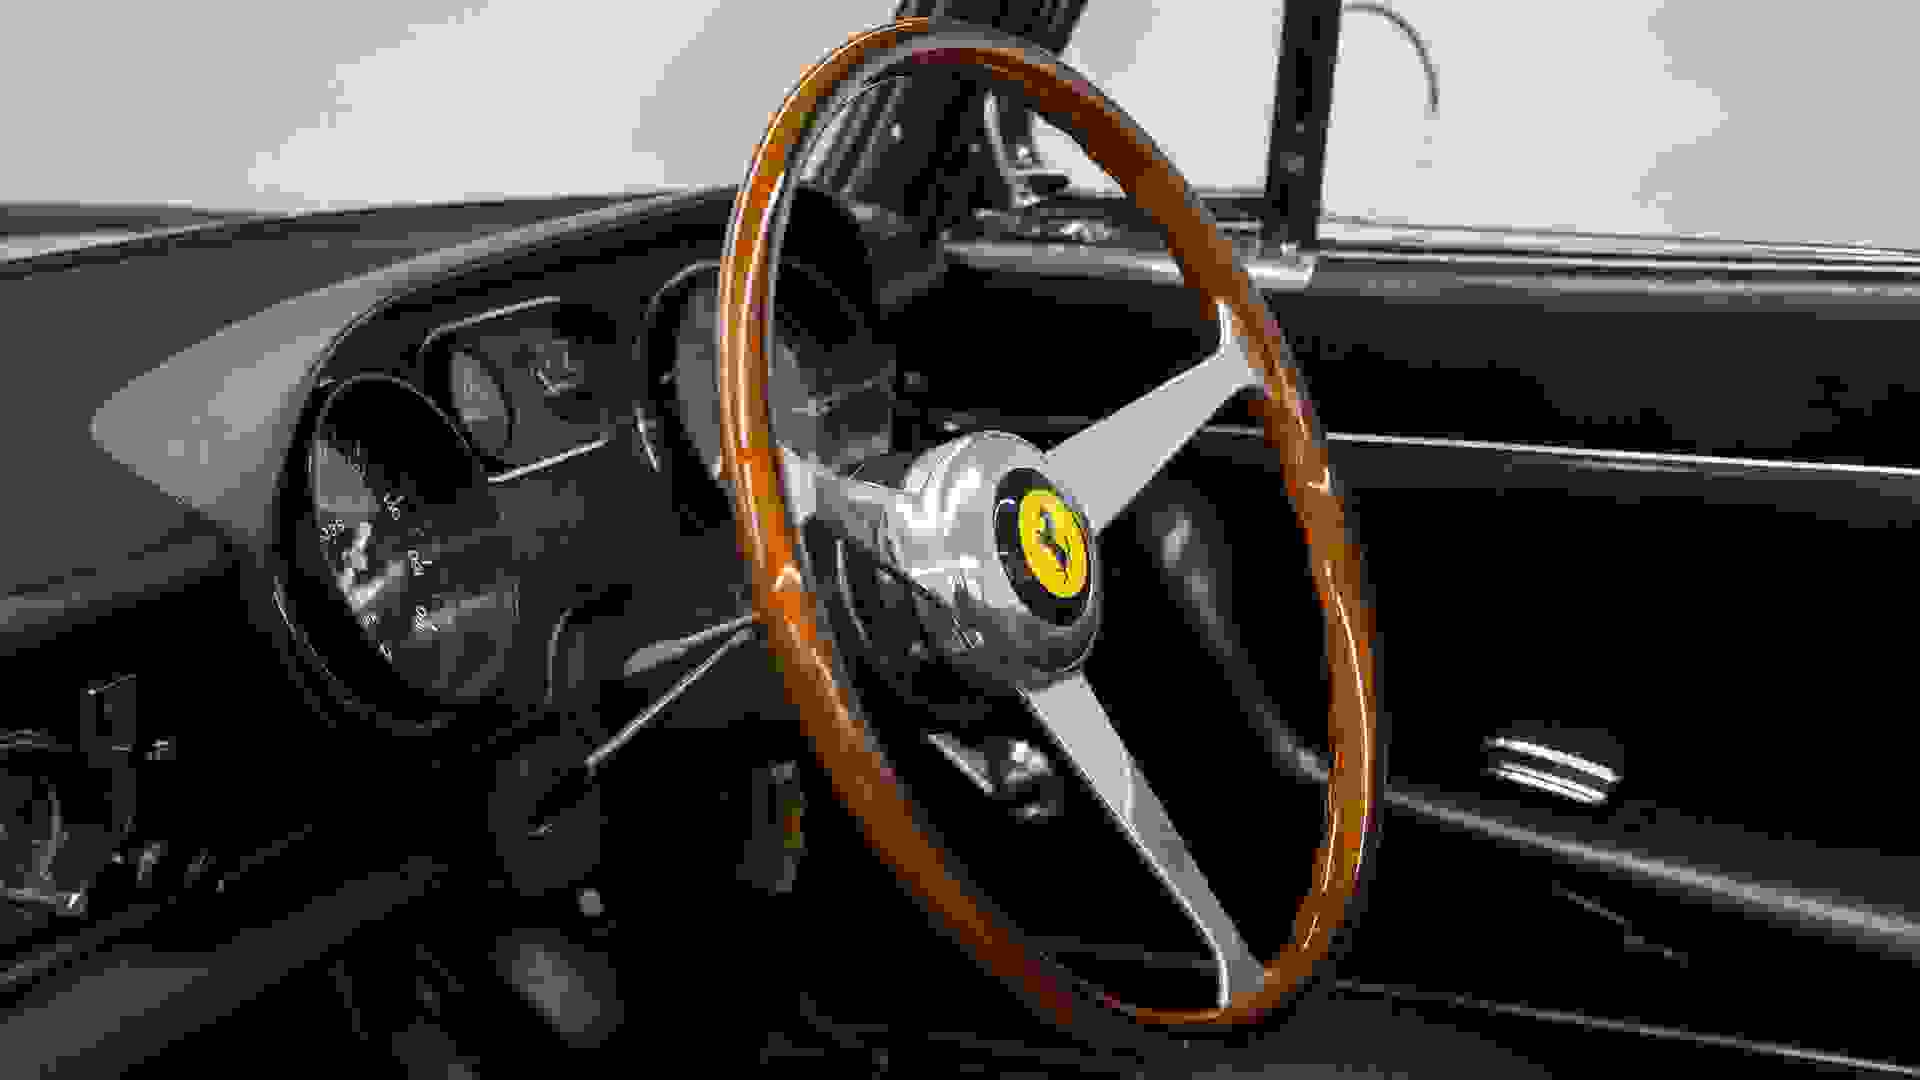 Ferrari 275 Photo e36e6cc9-5964-4a93-a858-12301cc89e92.jpg